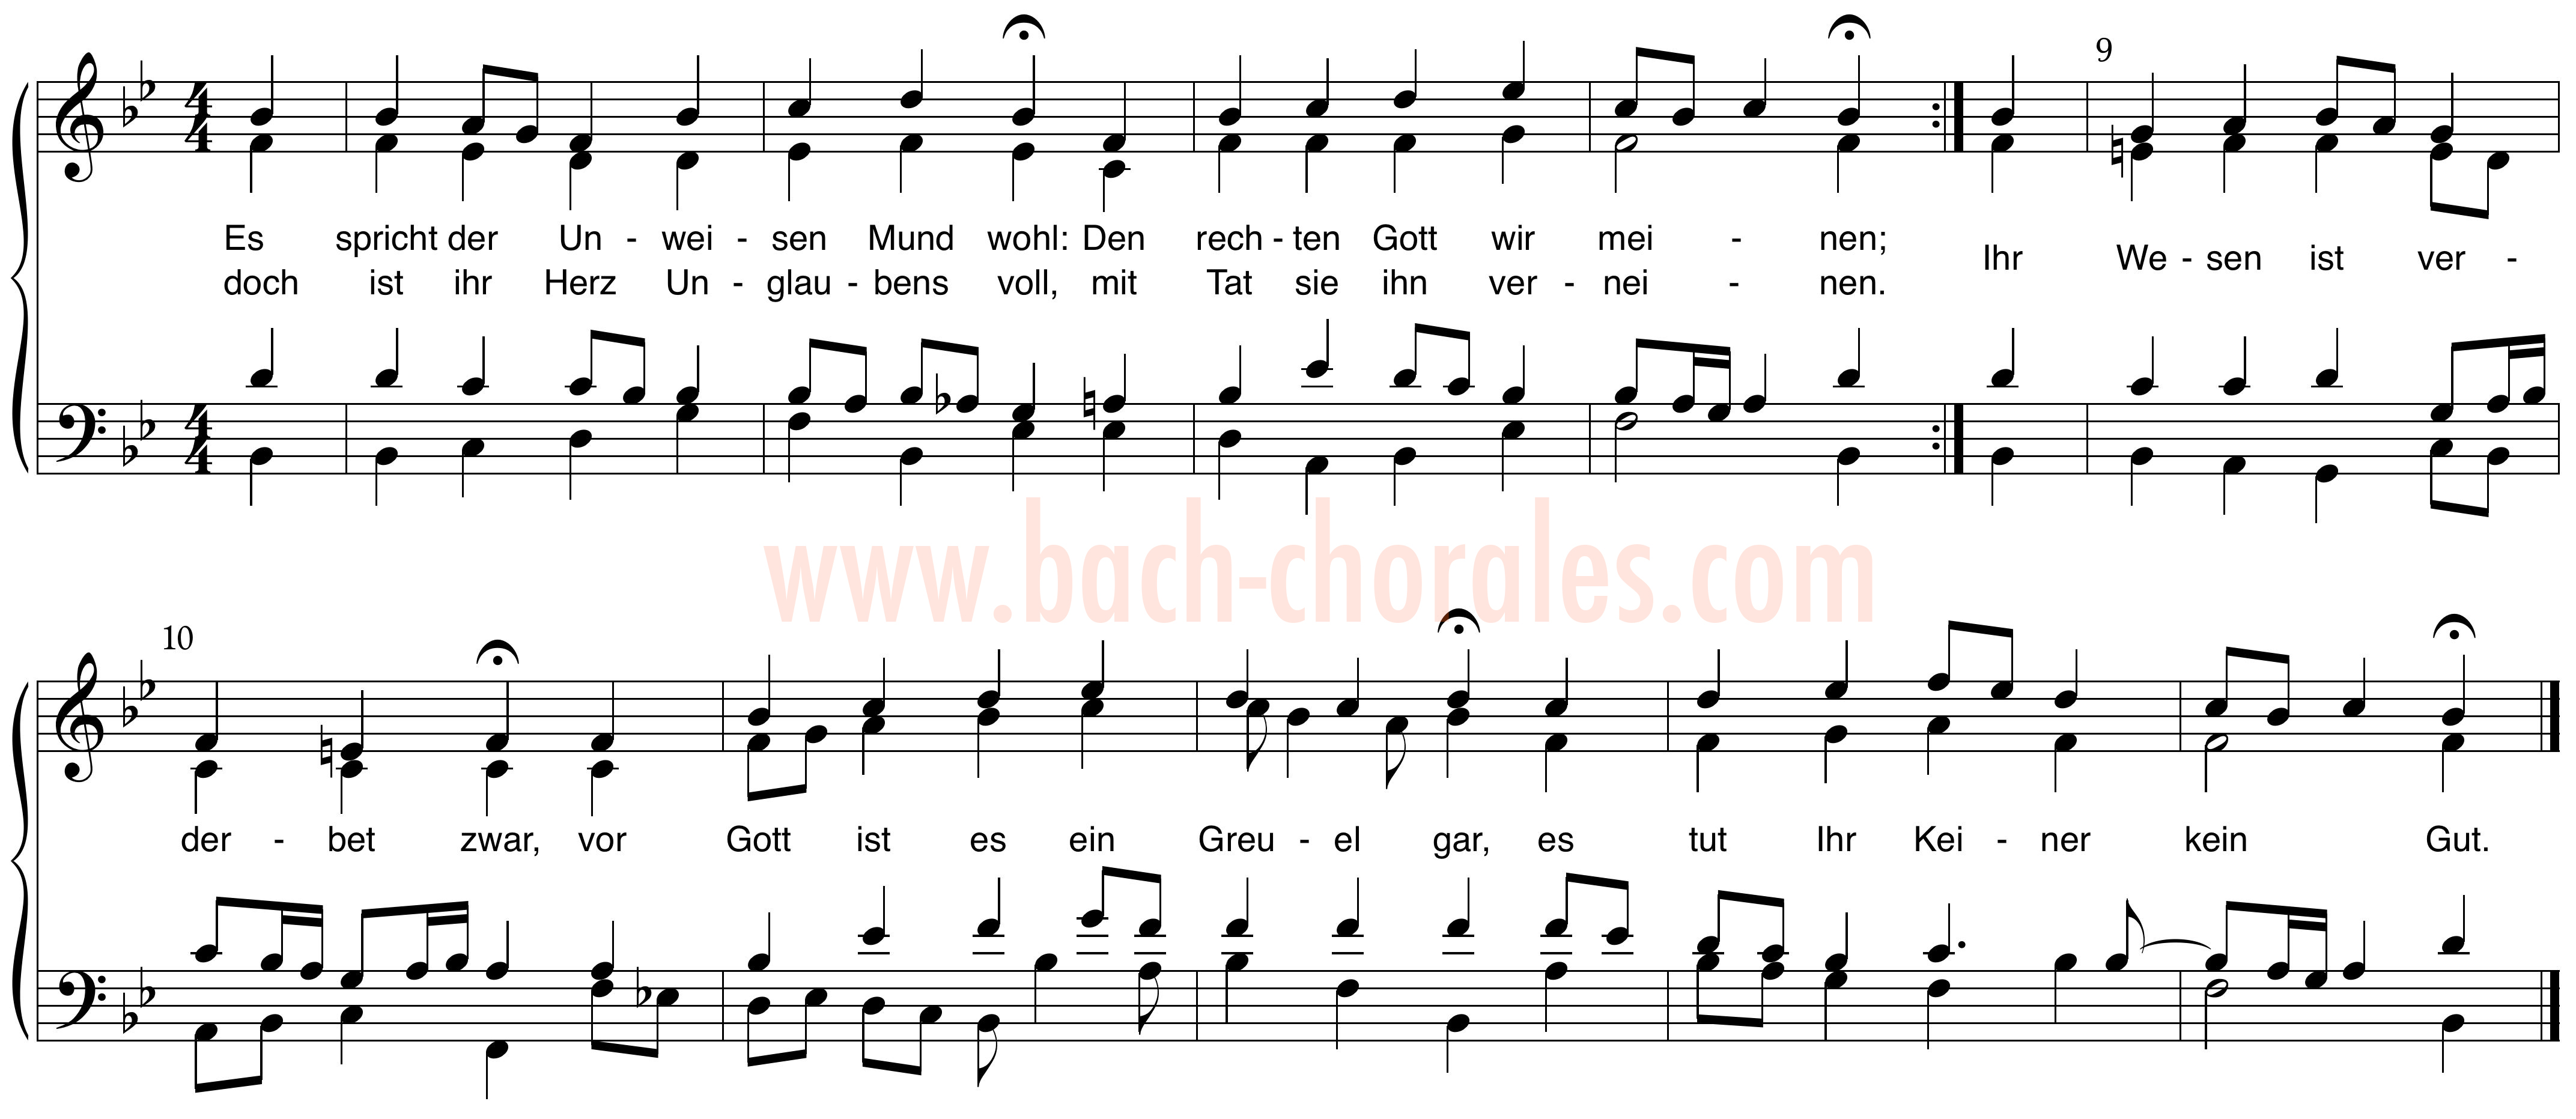 notenbeeld BWV 308 op https://www.bach-chorales.com/